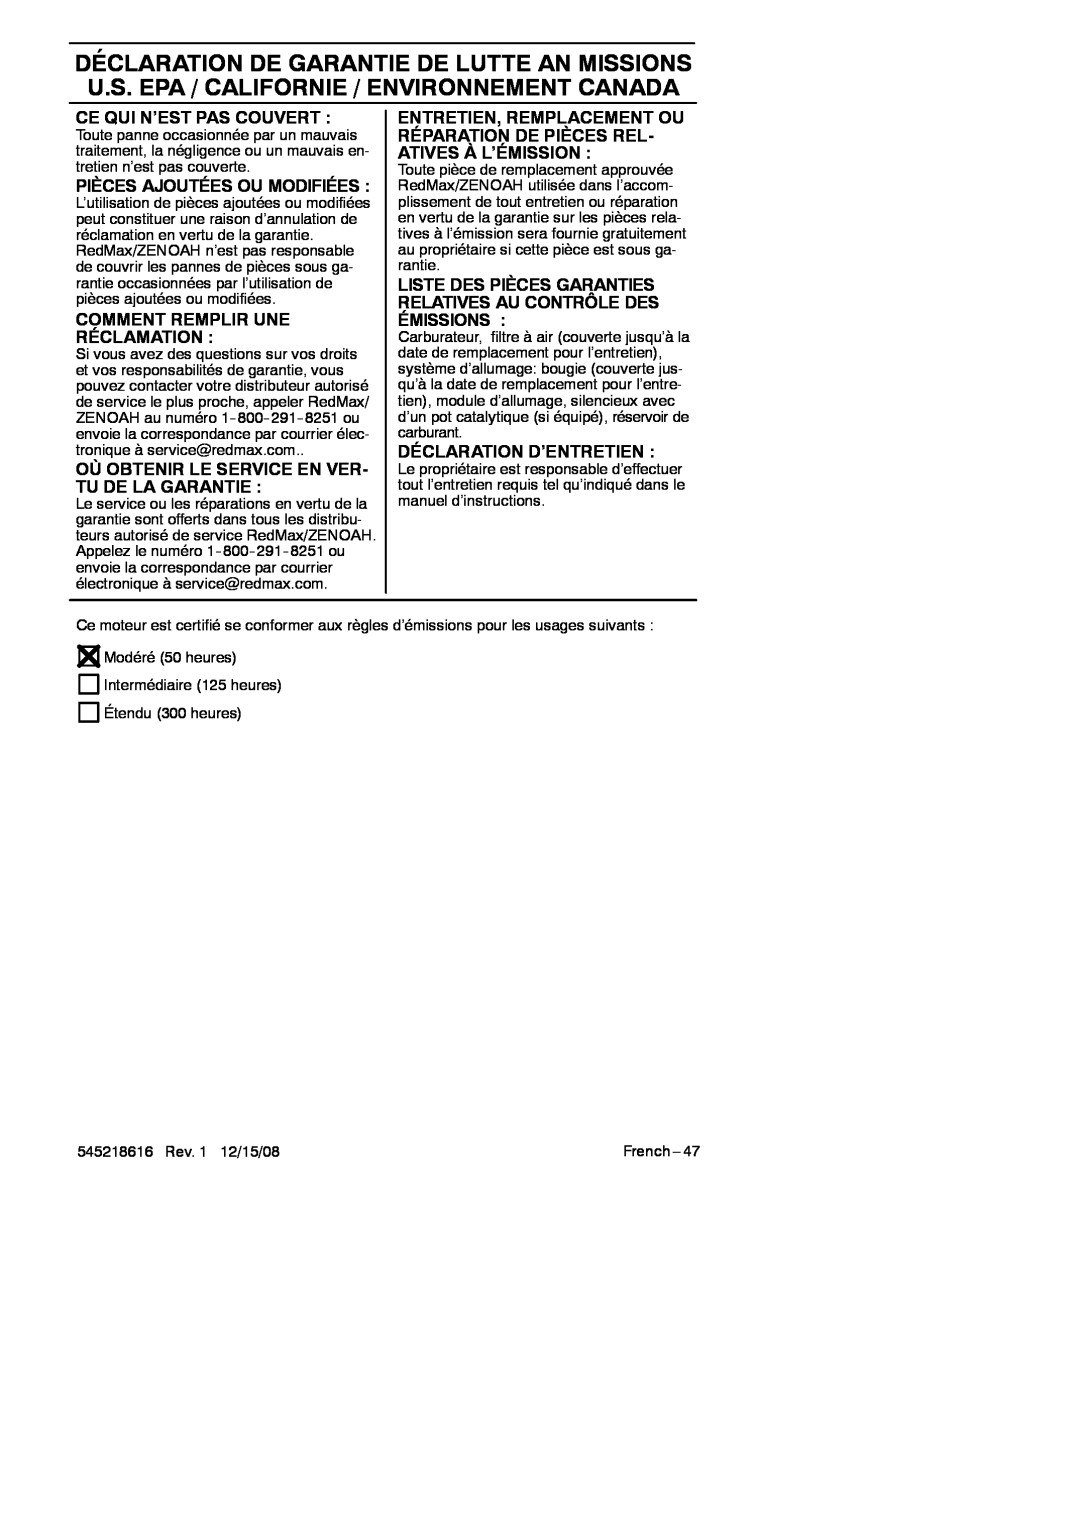 RedMax HB280 manual Ce Qui N’Est Pas Couvert, Pièces Ajoutées Ou Modifiées, Comment Remplir Une Réclamation 